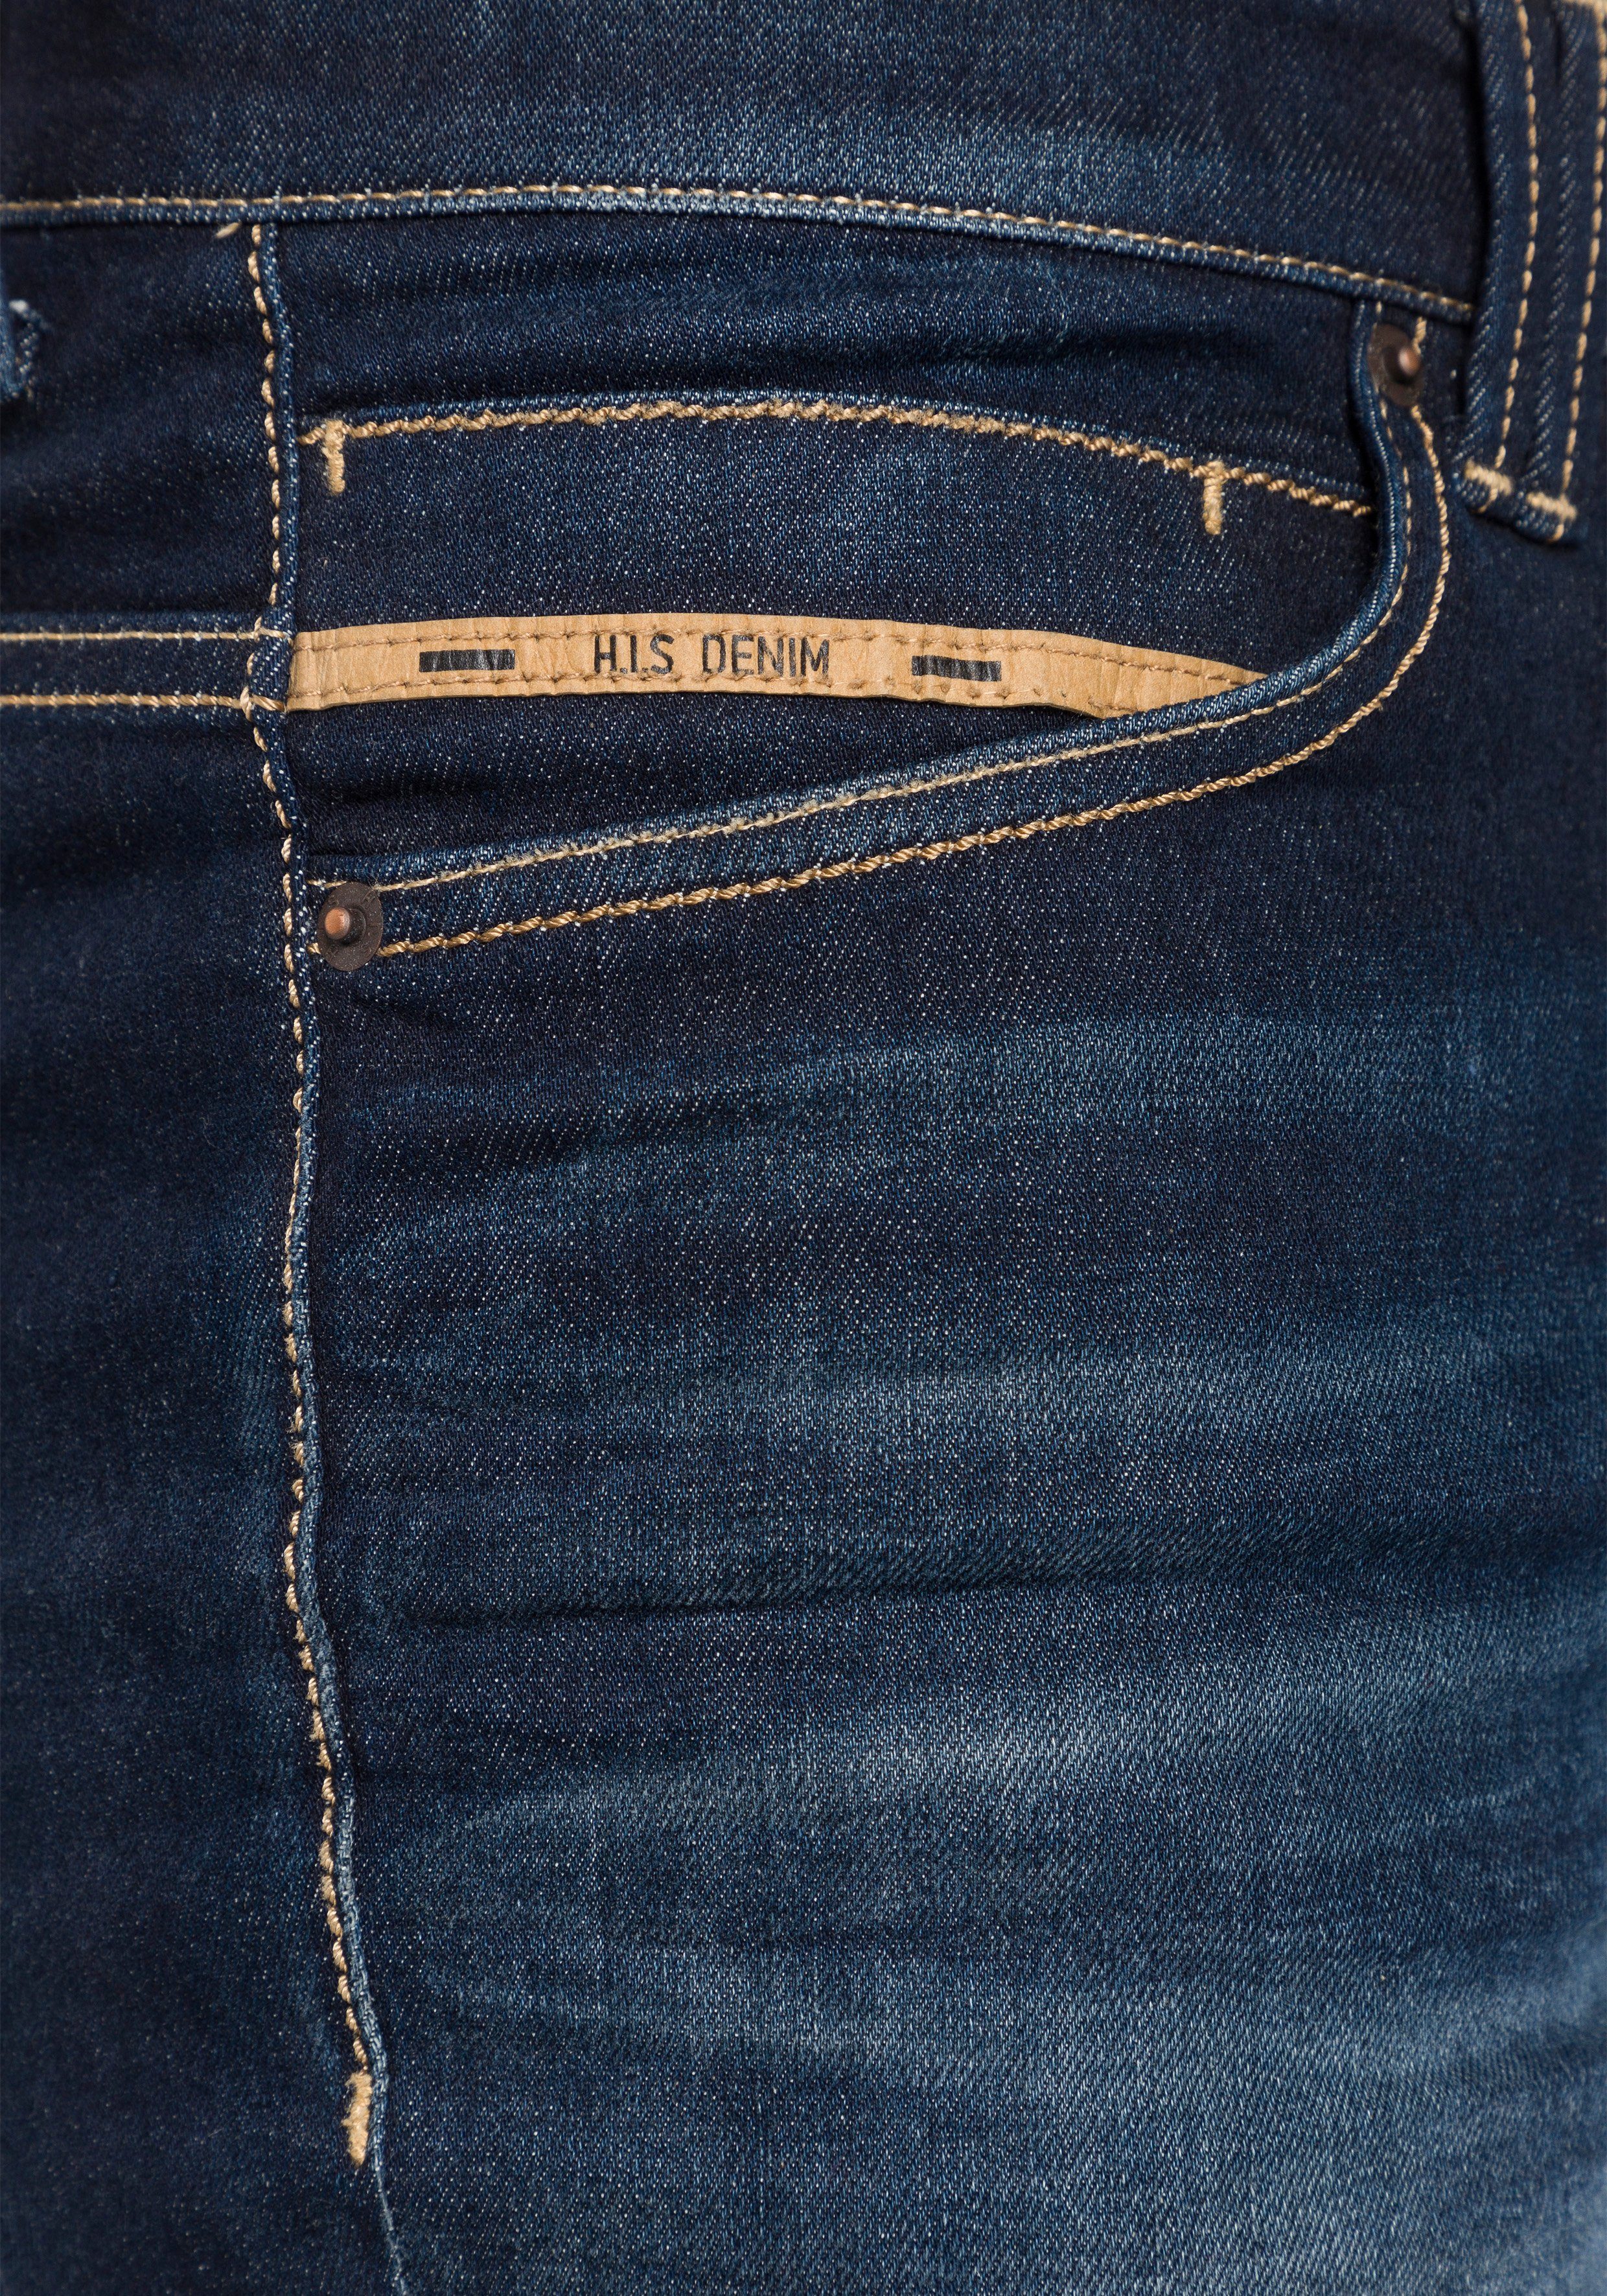 H.I.S Straight-Jeans CROSBY Ökologische, wassersparende Ozon Wash Produktion durch darkblue-used